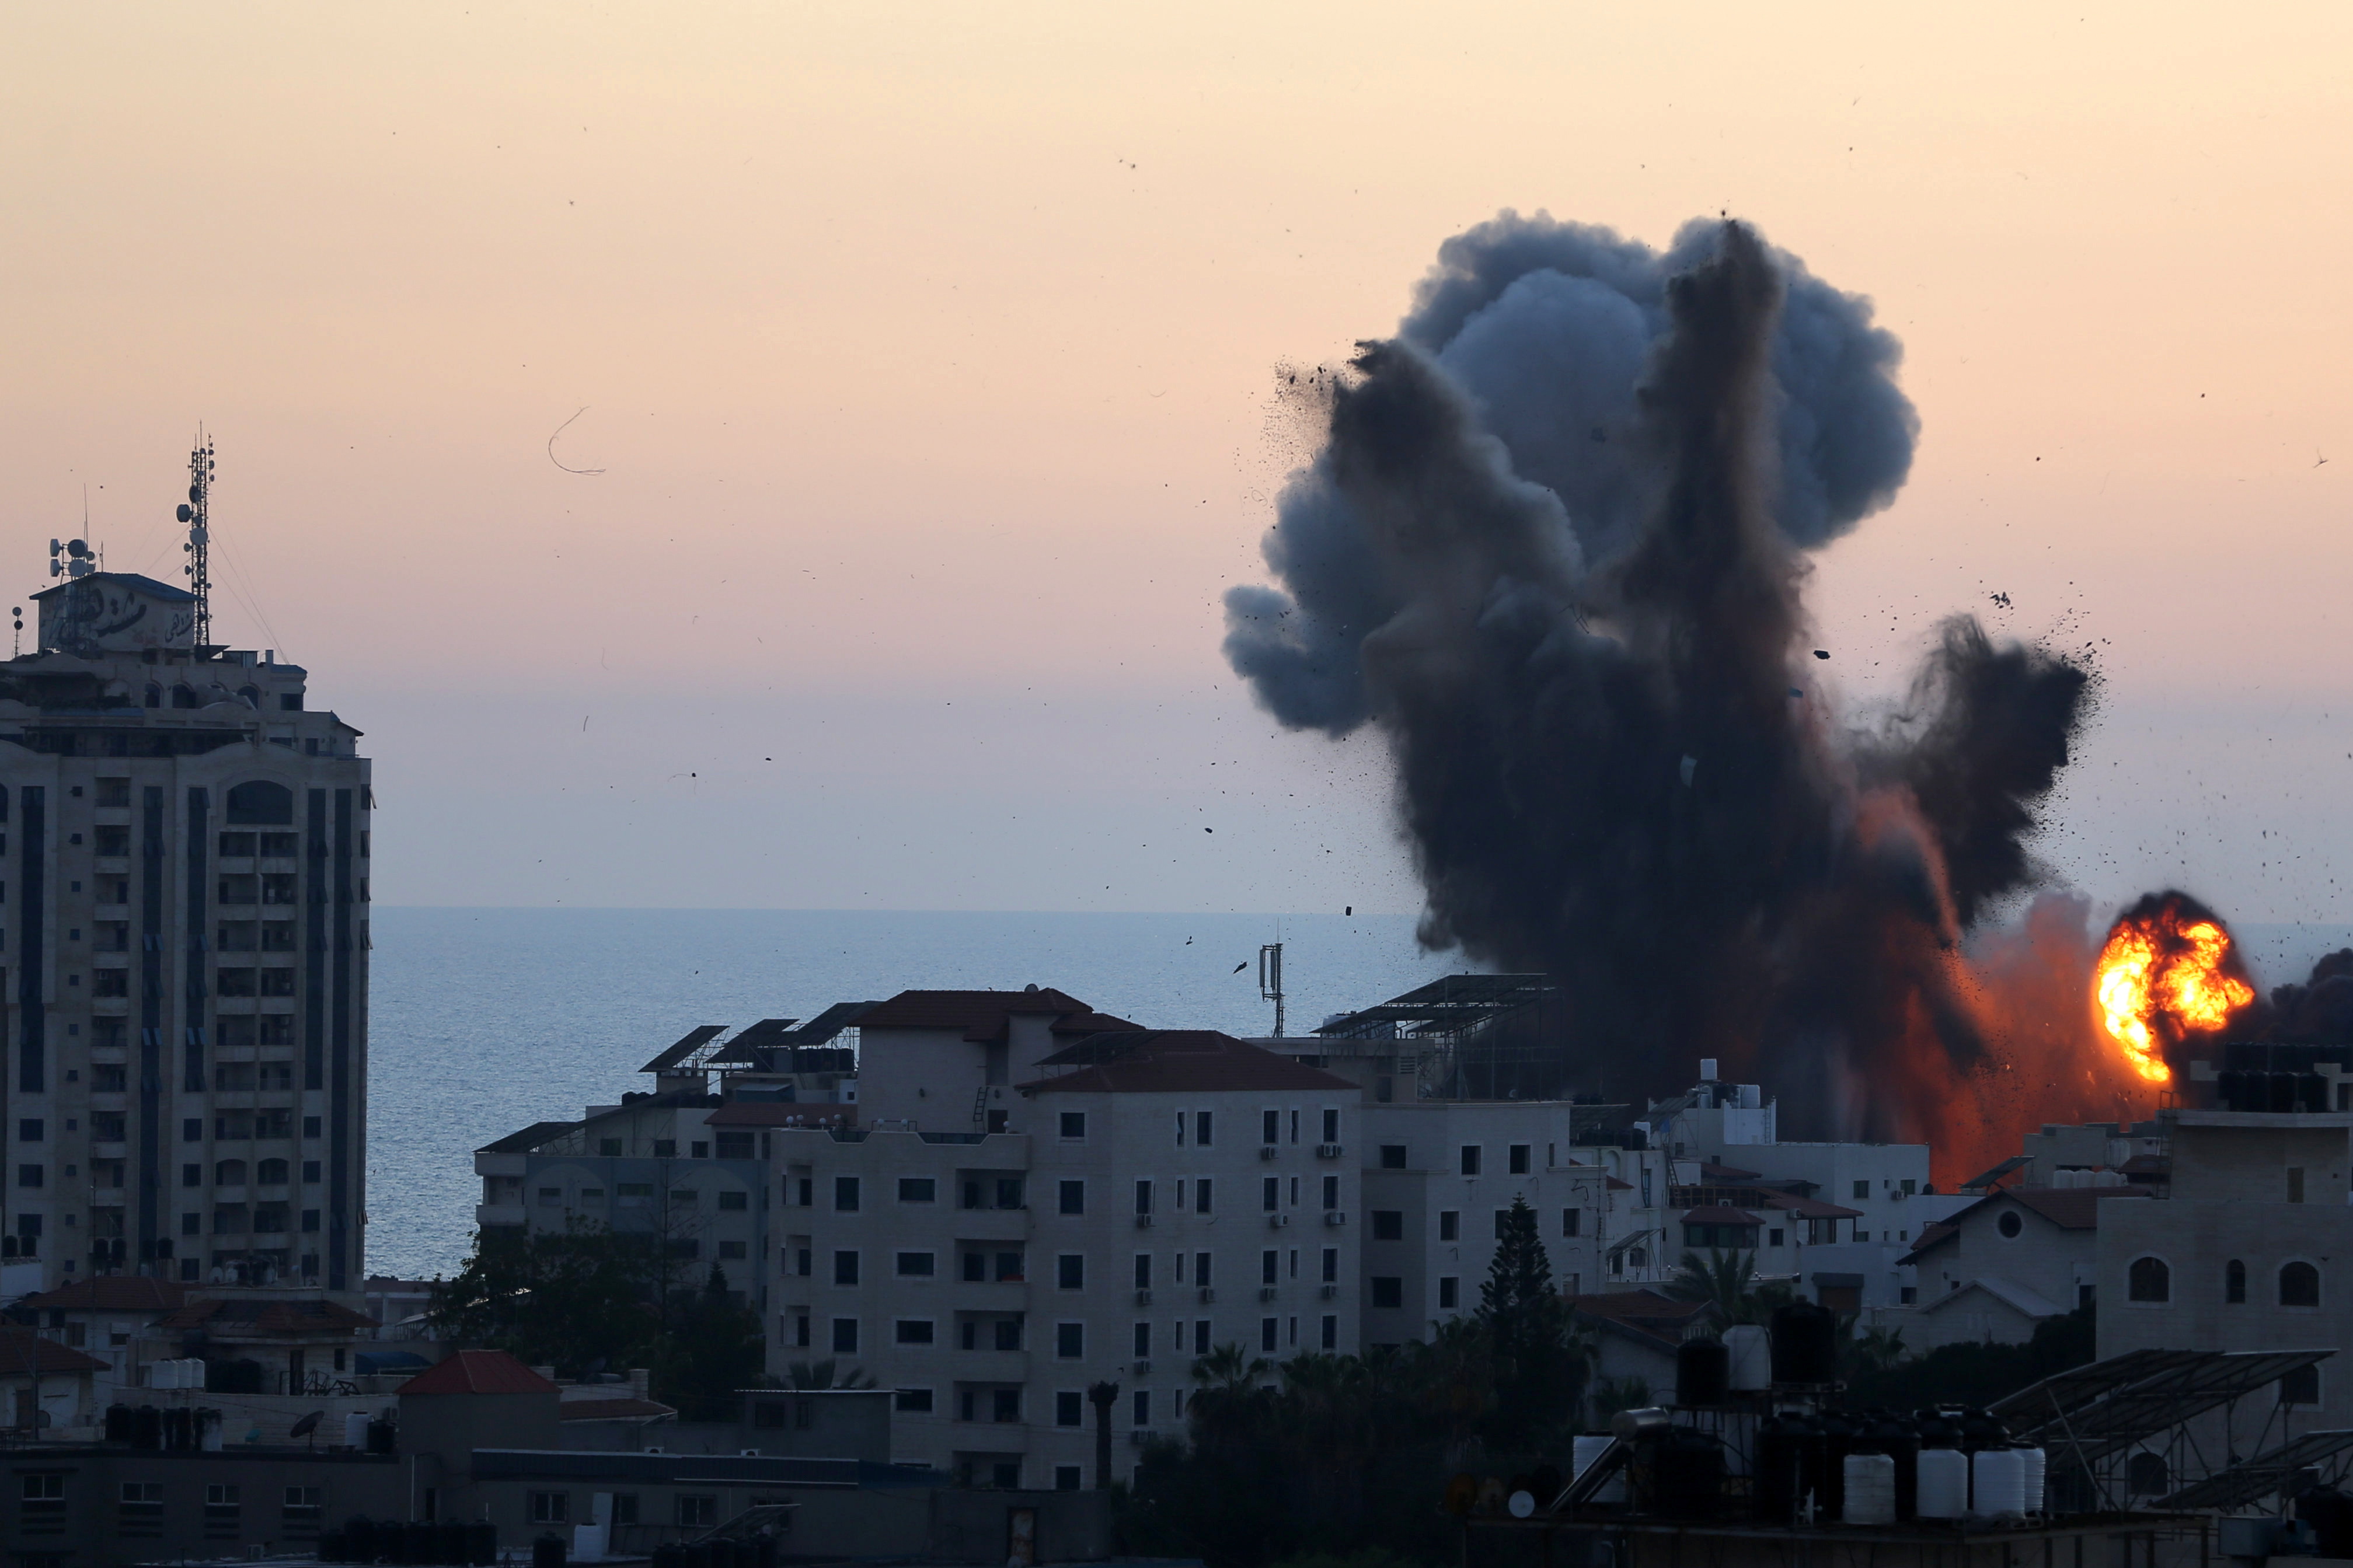 El humo y las llamas se elevan durante los ataques aéreos israelíes, mientras continúa la violencia transfronteriza entre el ejército israelí y los militantes palestinos, en la ciudad de Gaza, el 14 de mayo de 2021 (REUTERS/Ibraheem Abu Mustafa)